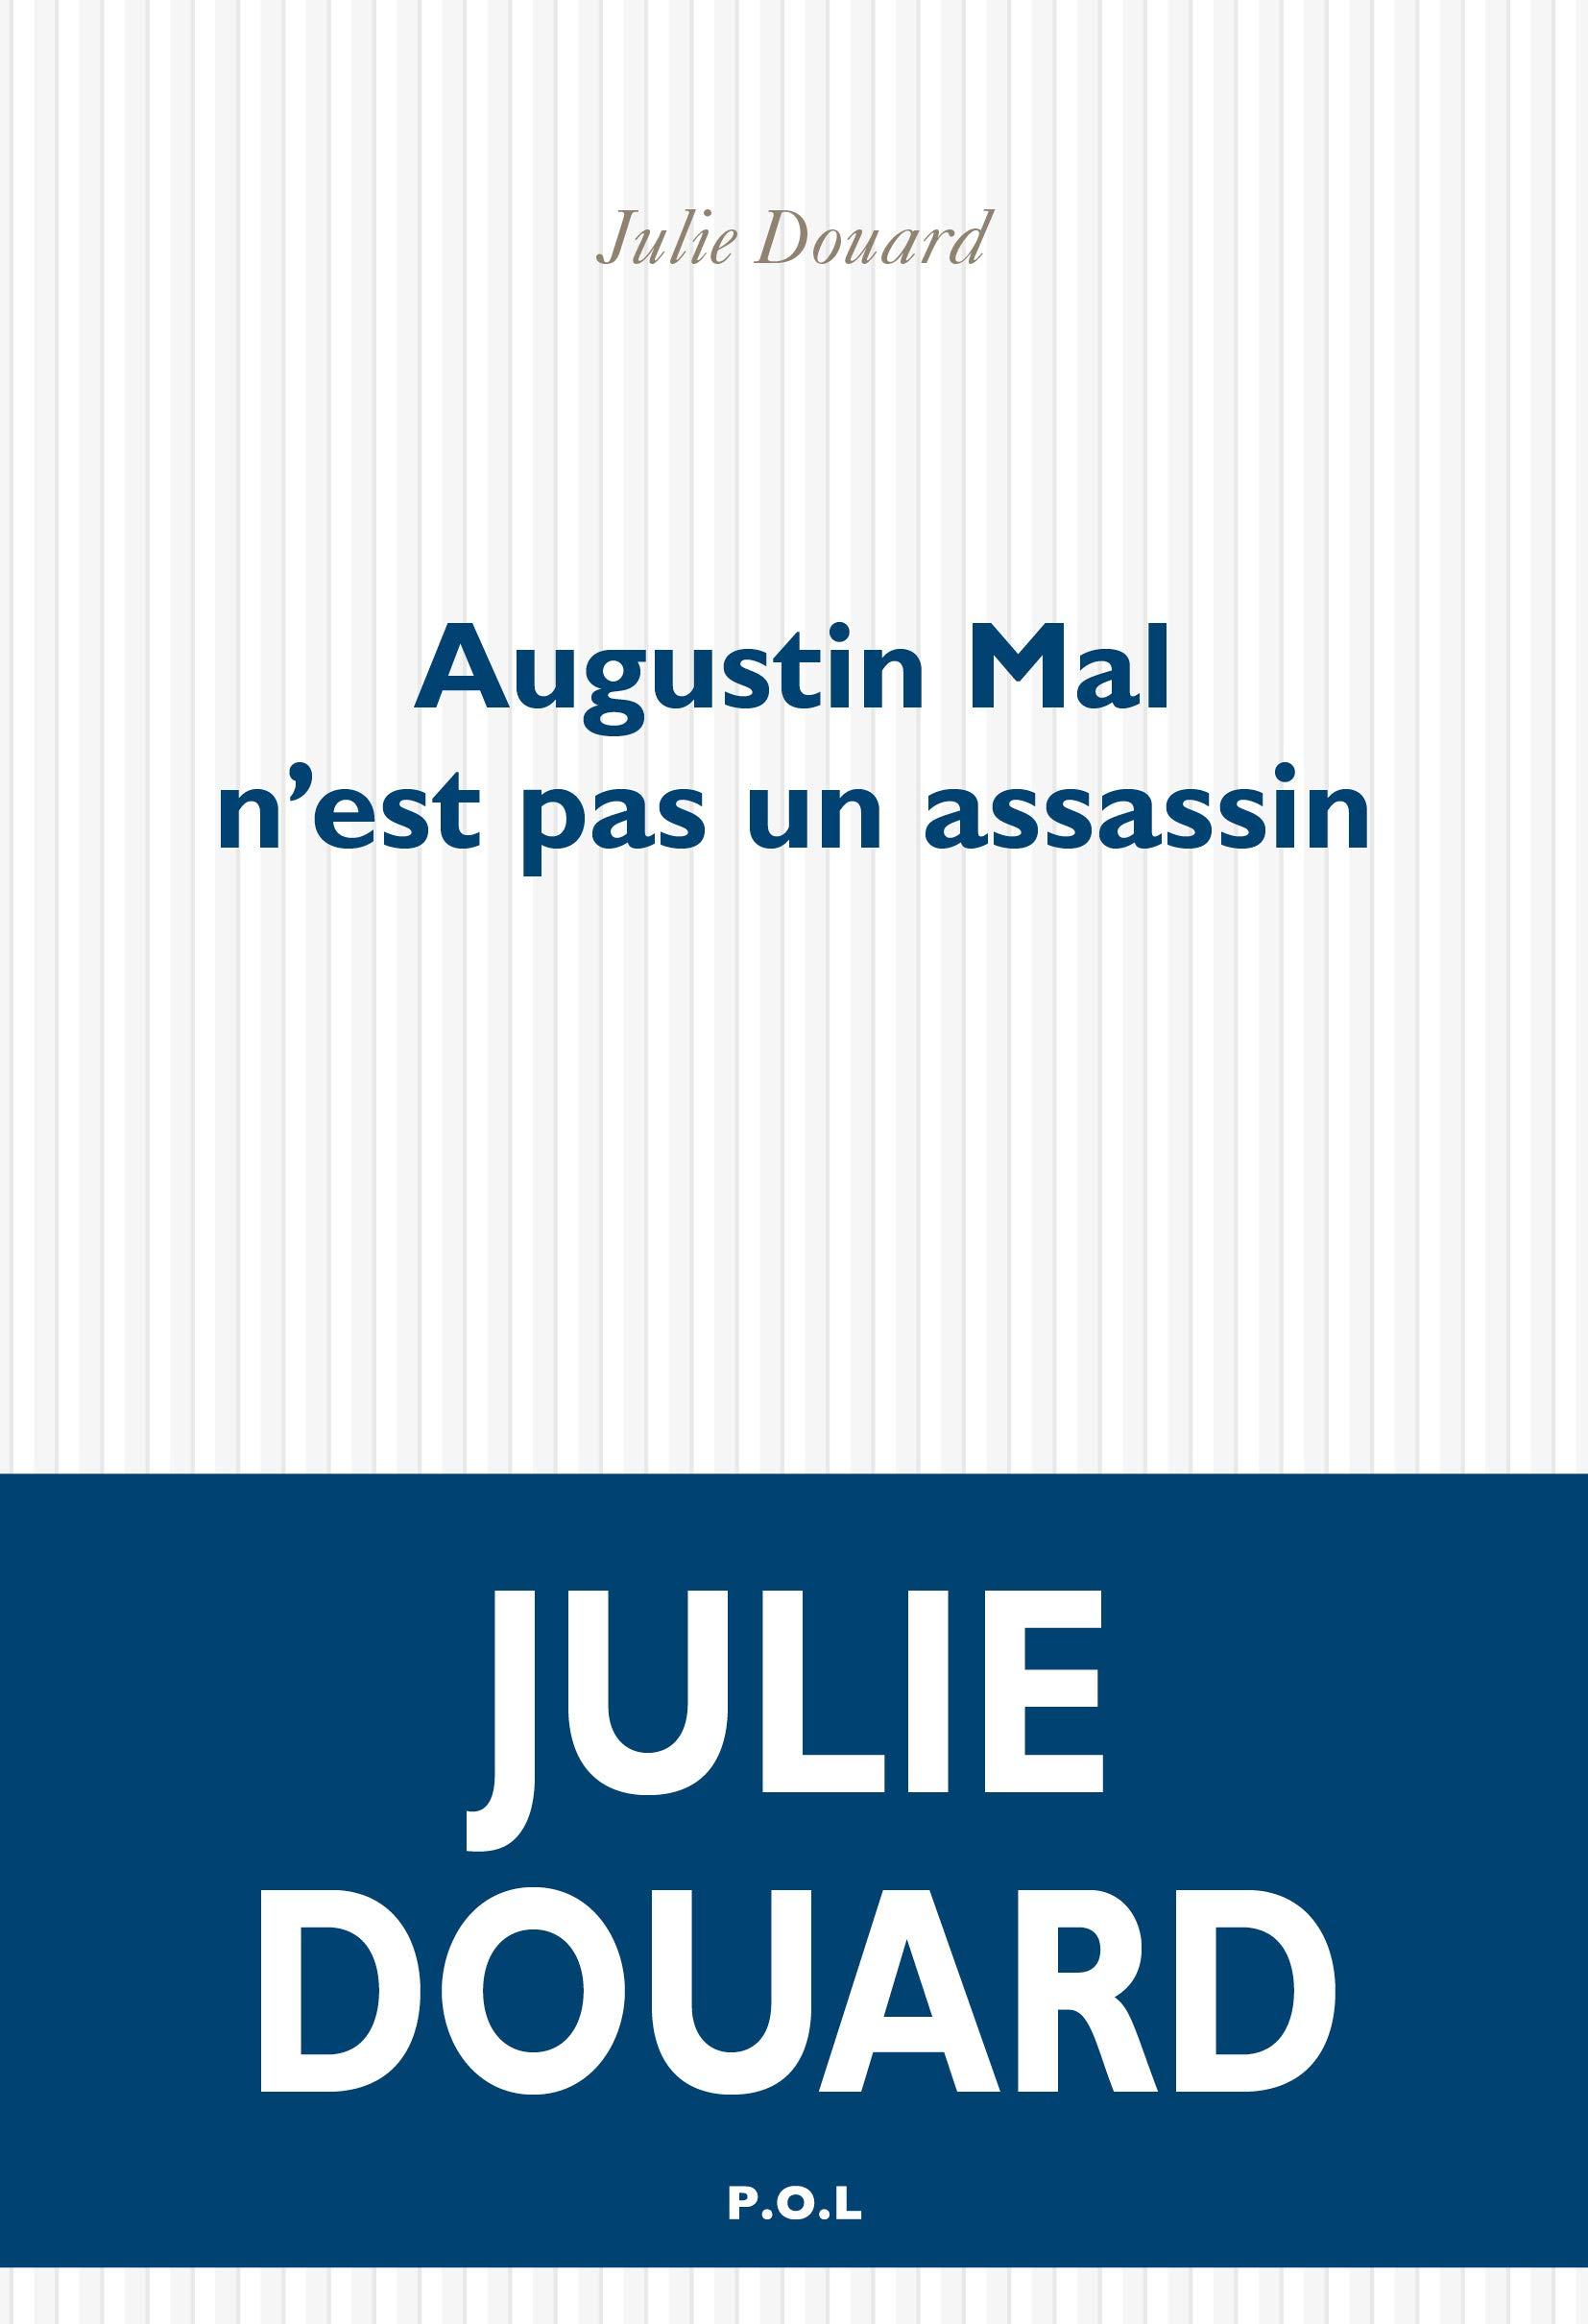 La couverture de "Augustin Mal n'est pas un assassin" de Julie Douard. [P.O.L.]